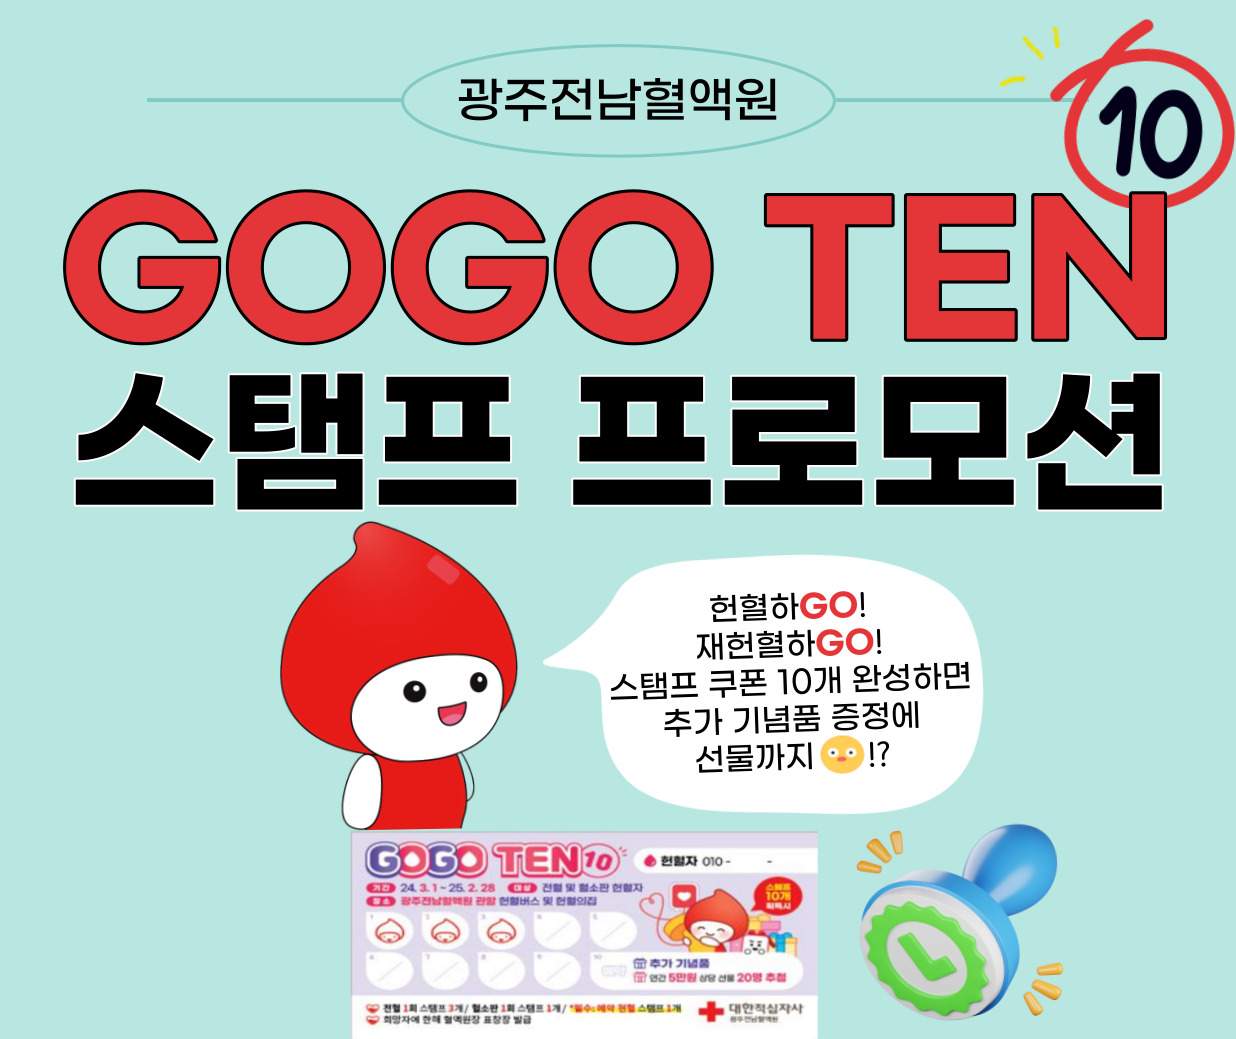 ［광주전남혈액원］Go-Go TEN(10) 스탬프 프로모션